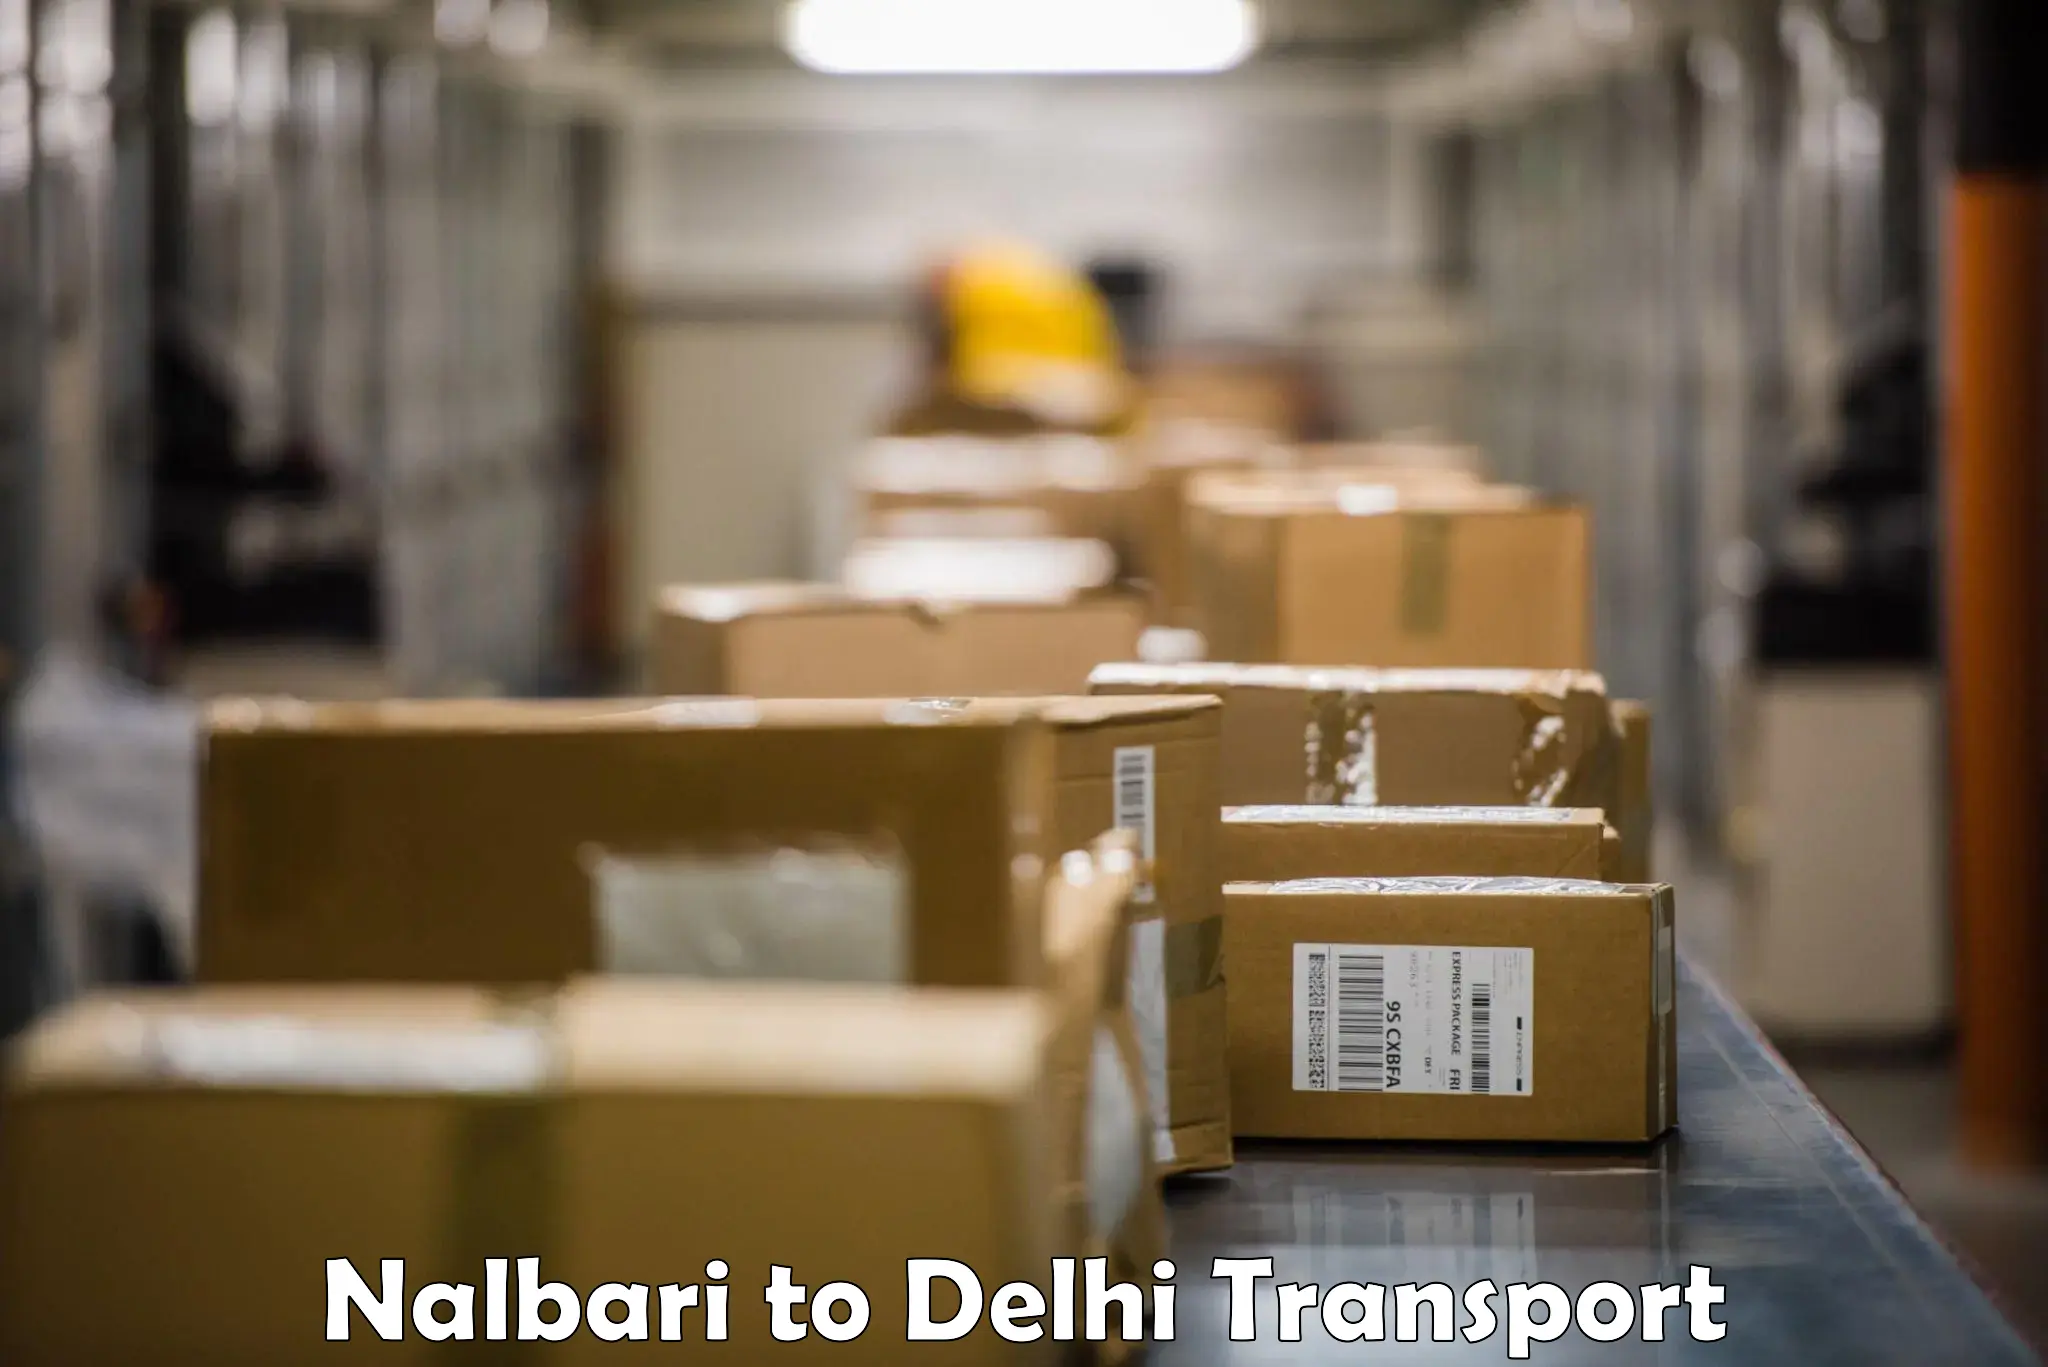 Goods delivery service Nalbari to Burari